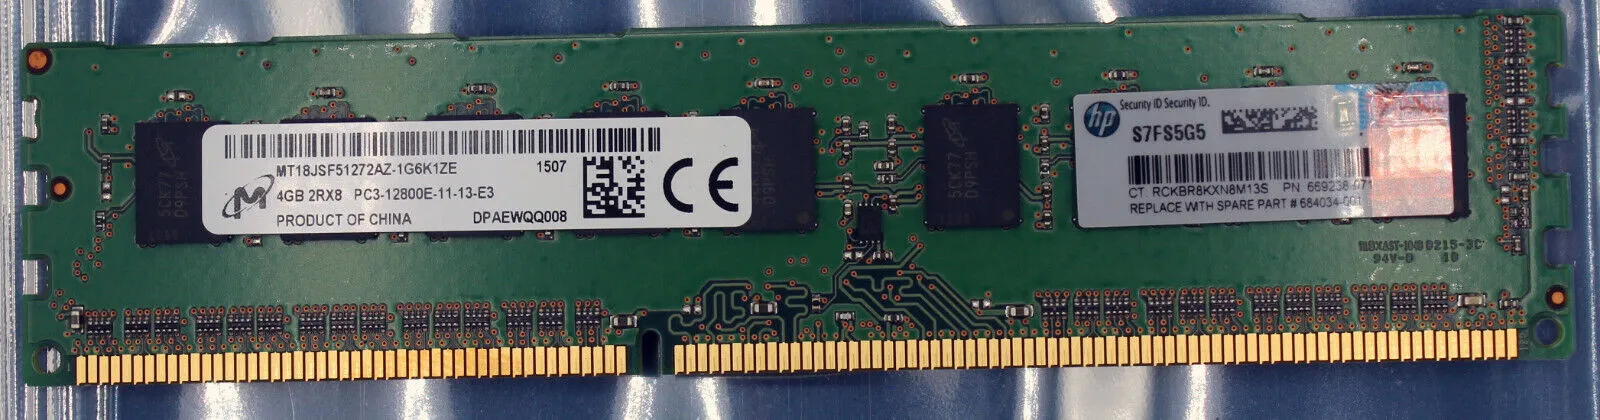 Оперативная память 684034-001 4GB 2Rx8 pc3/12800e/11/13/e3 DDR3 RAM Memory#1